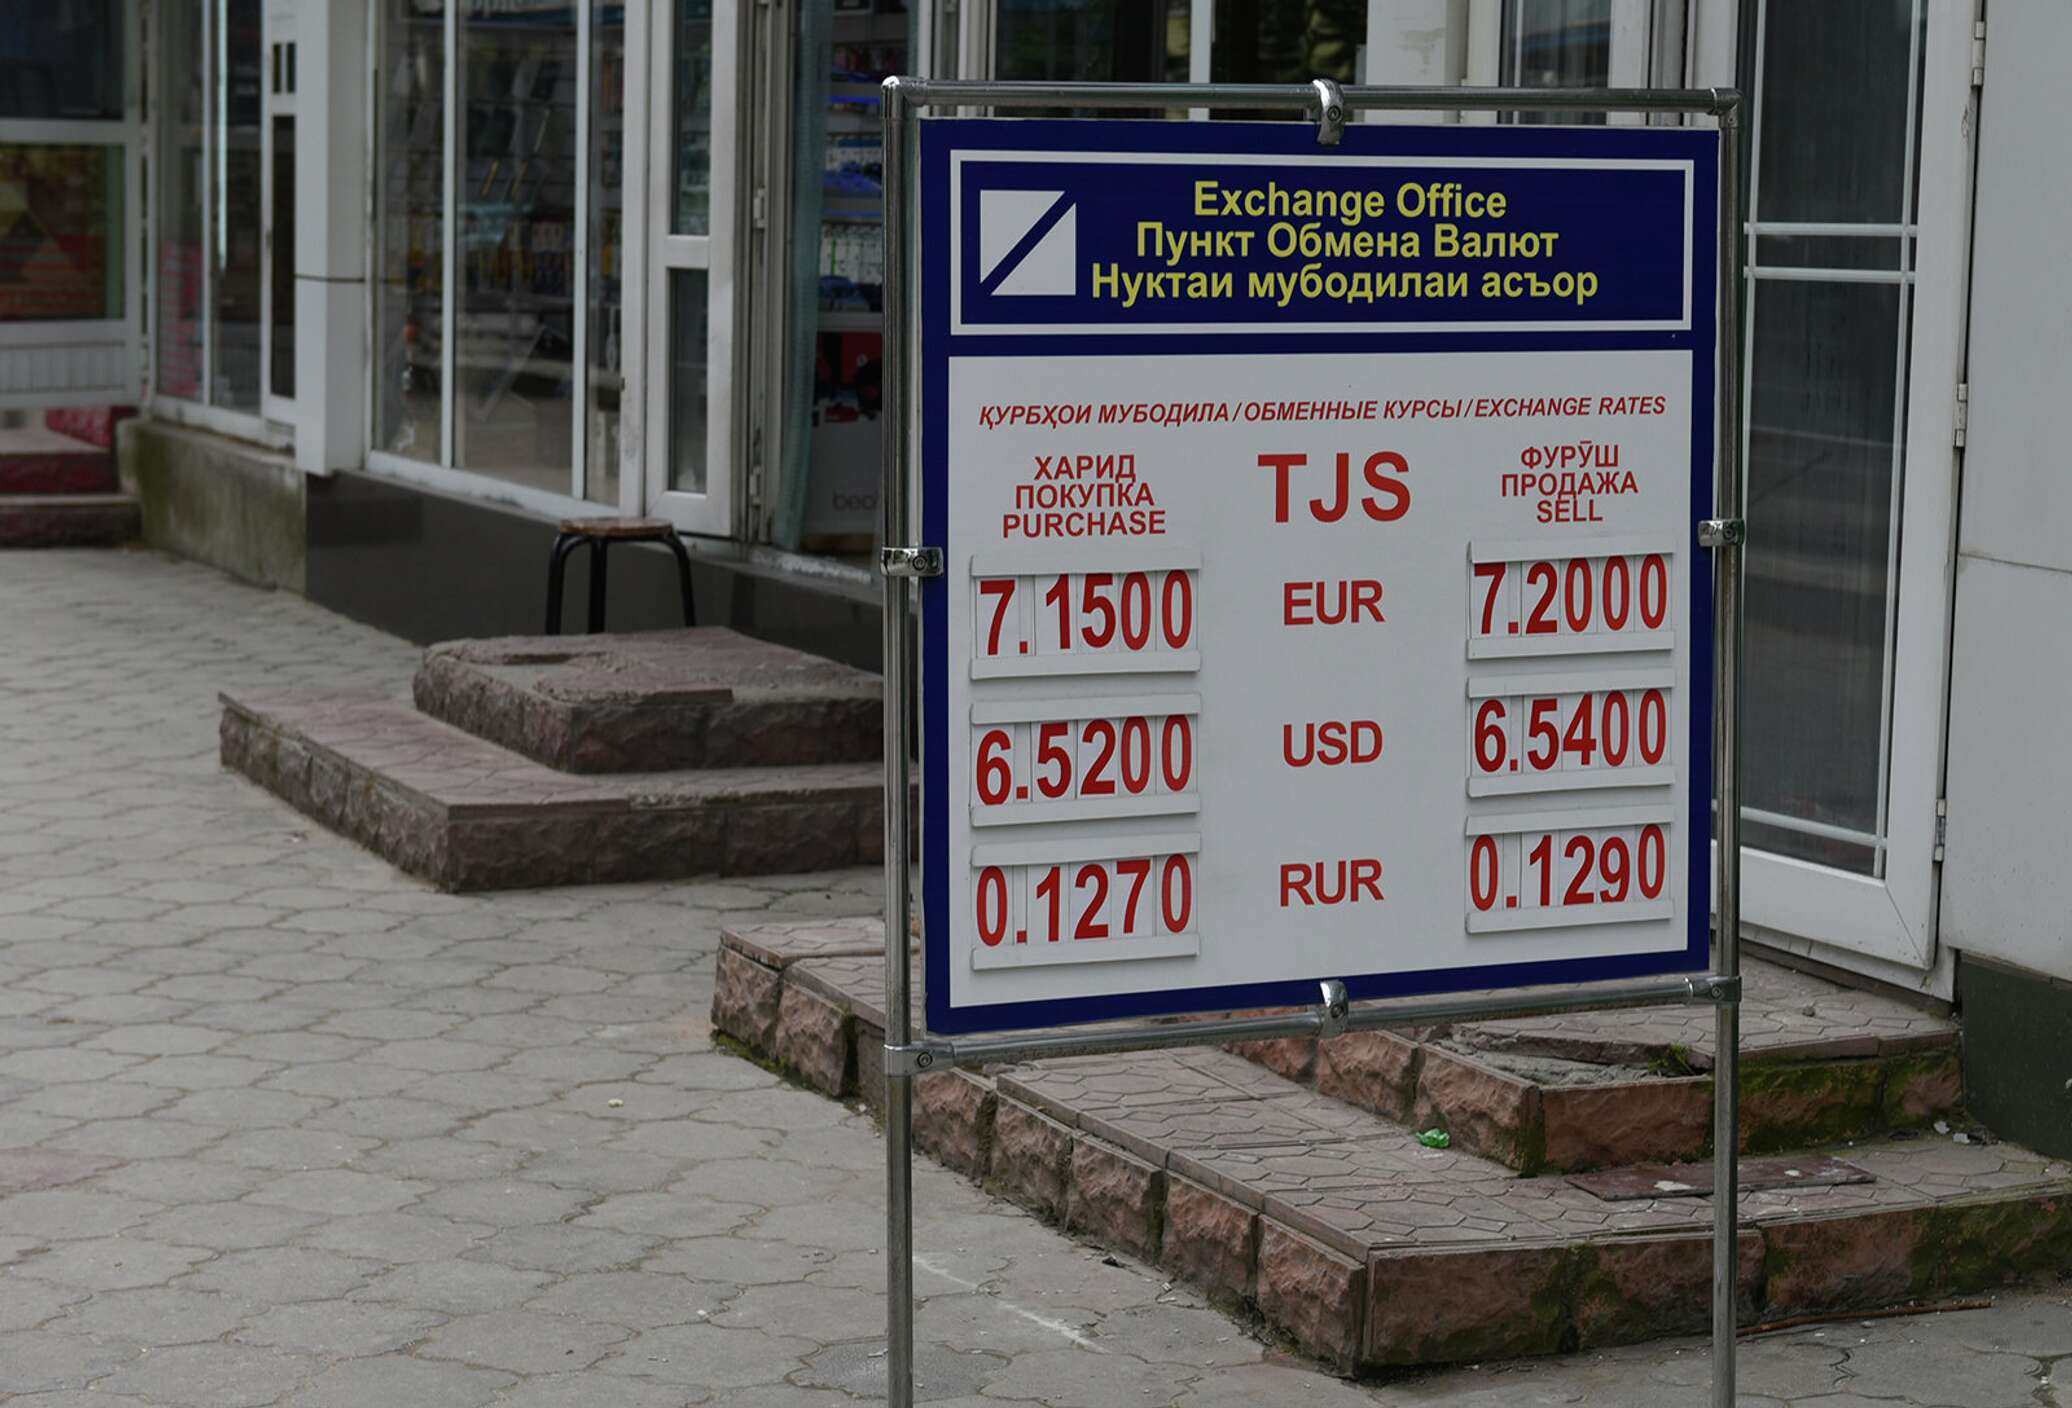 Банк рубил. Обменный пункт. Обменные пункты в Таджикистане. Курсы валют. Курсы валют в Таджикистане.